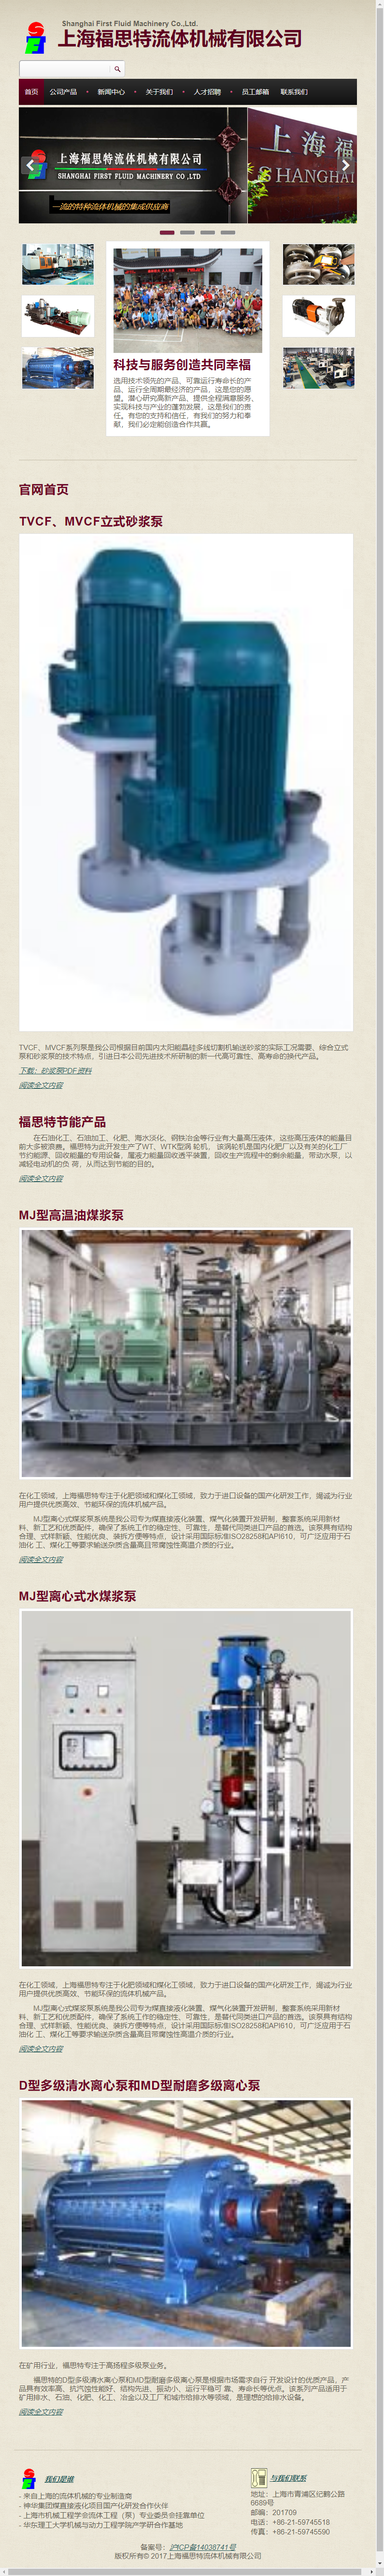 上海福思特流体机械有限公司网站案例